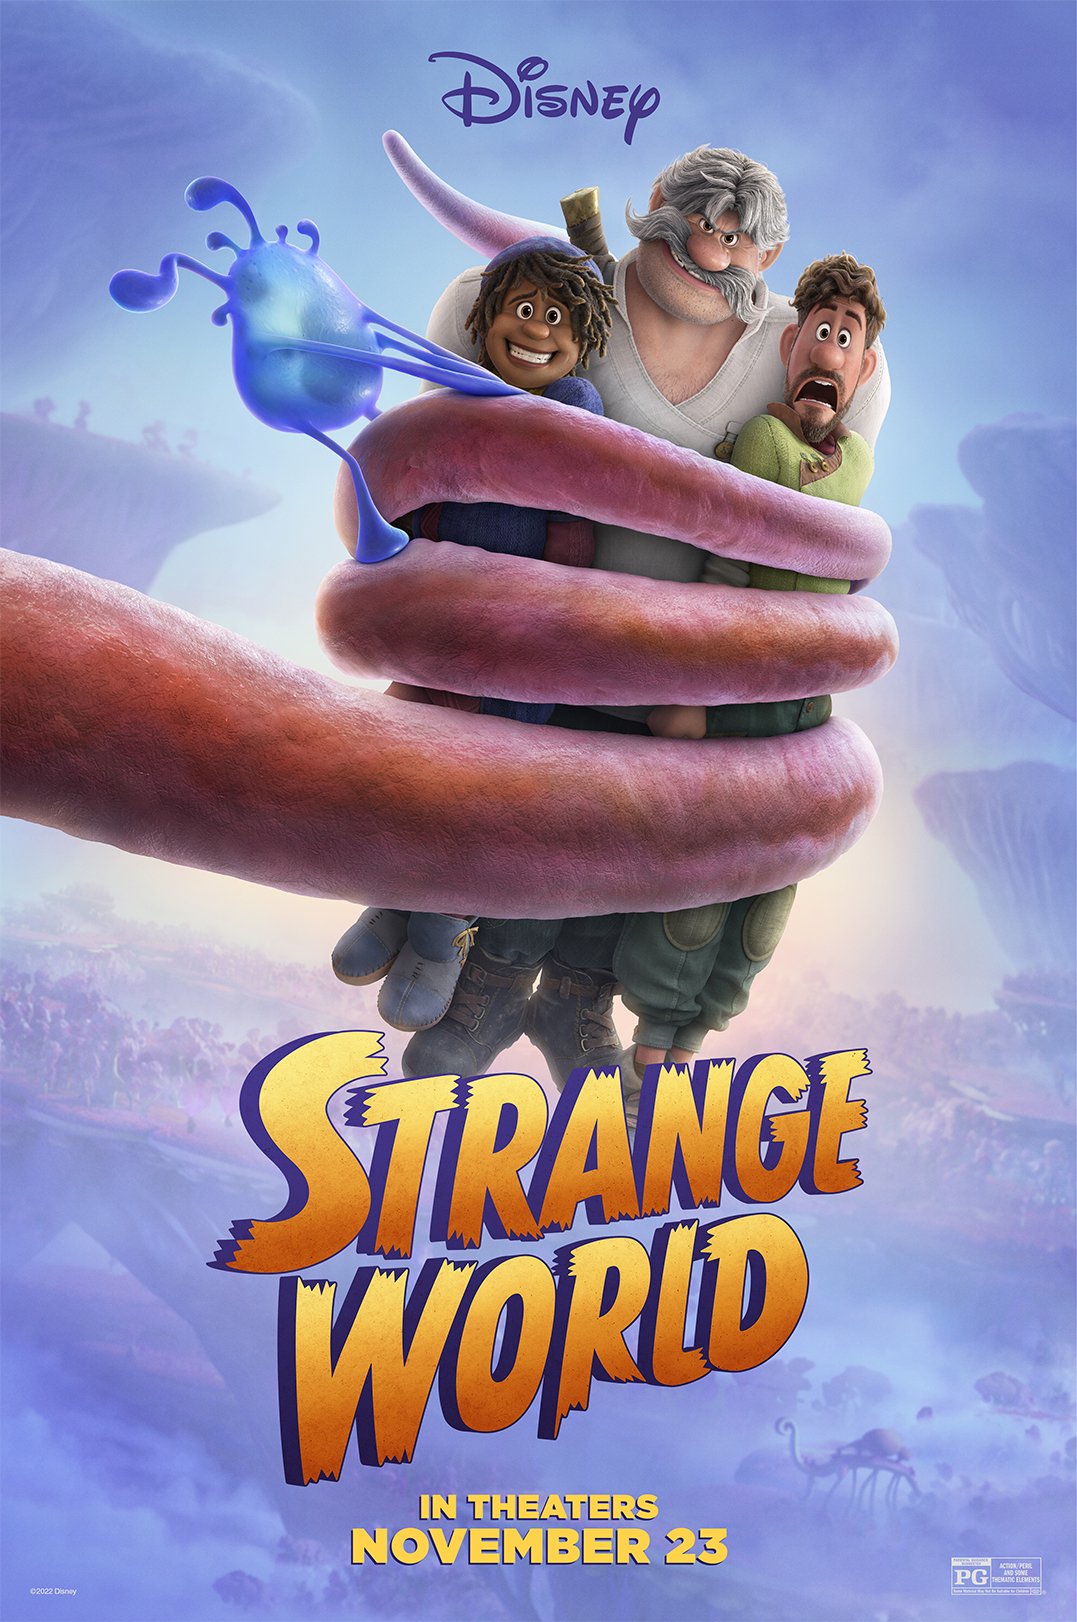 New “Strange World” Poster Released